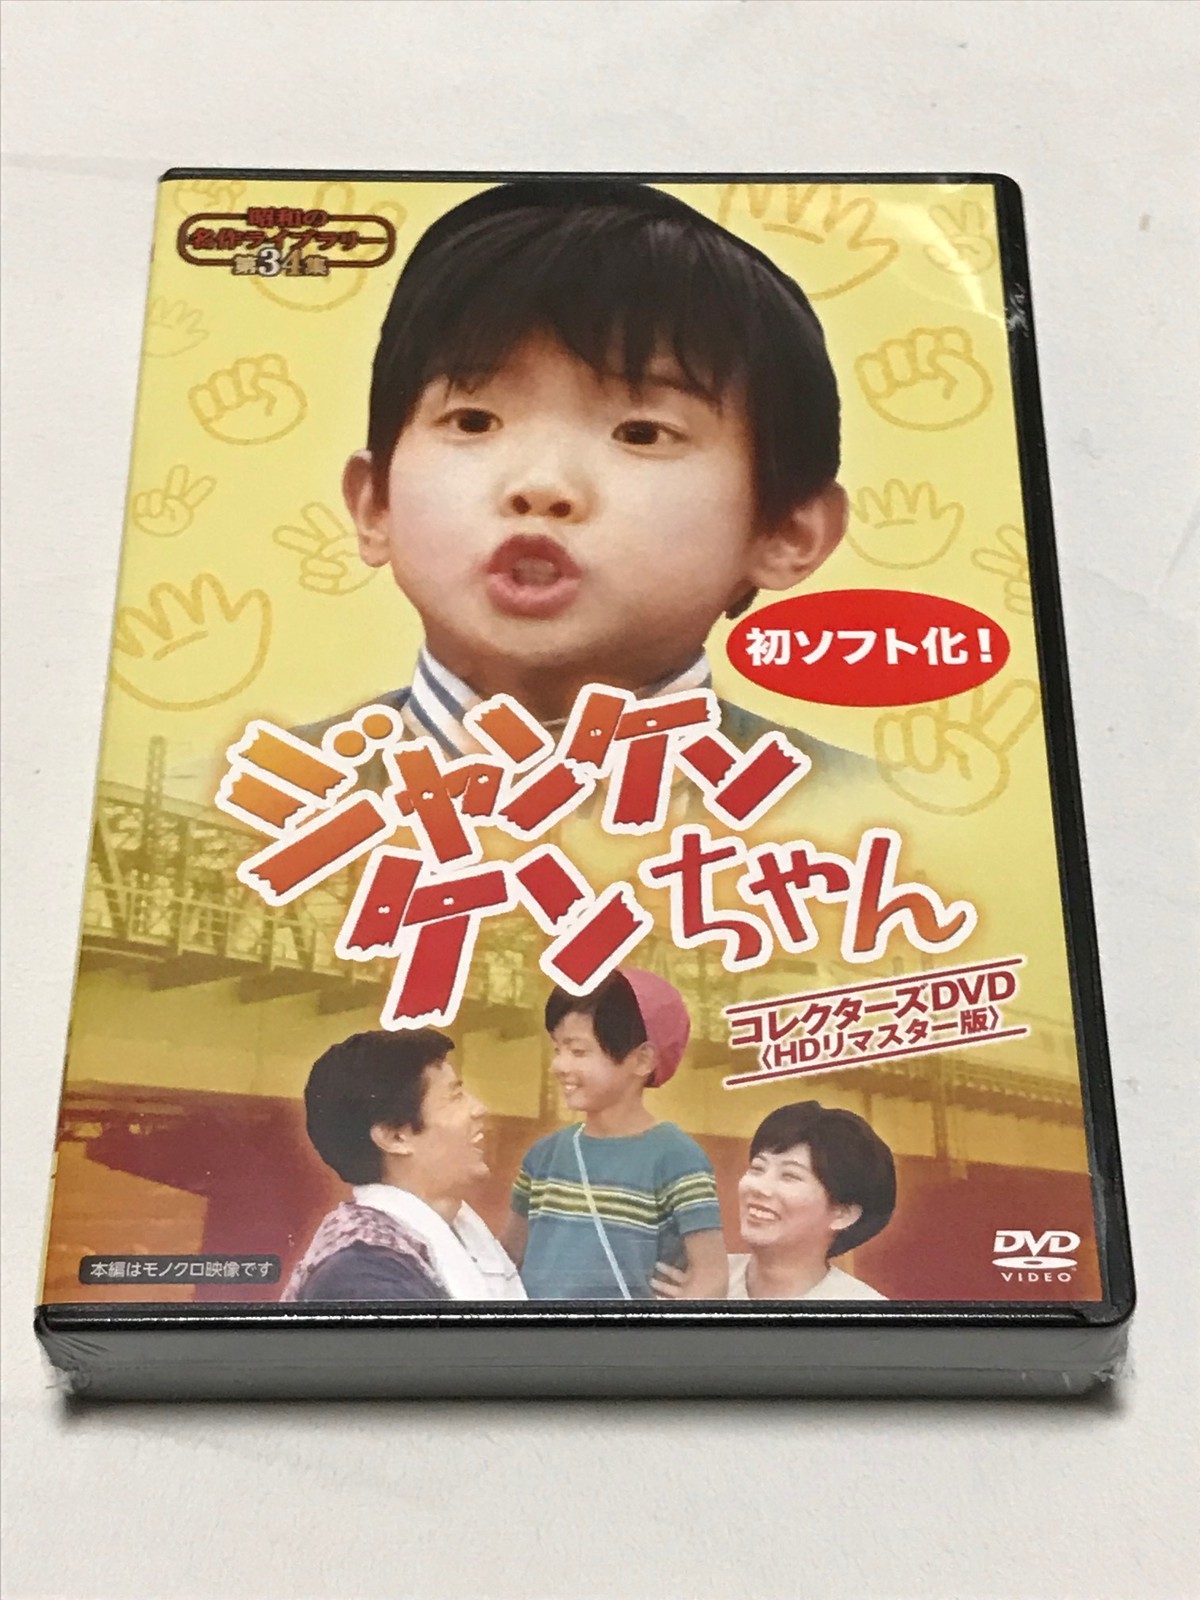 ジャンケンケンちゃん コレクターズdvd Hdリマスター版 Susunshop